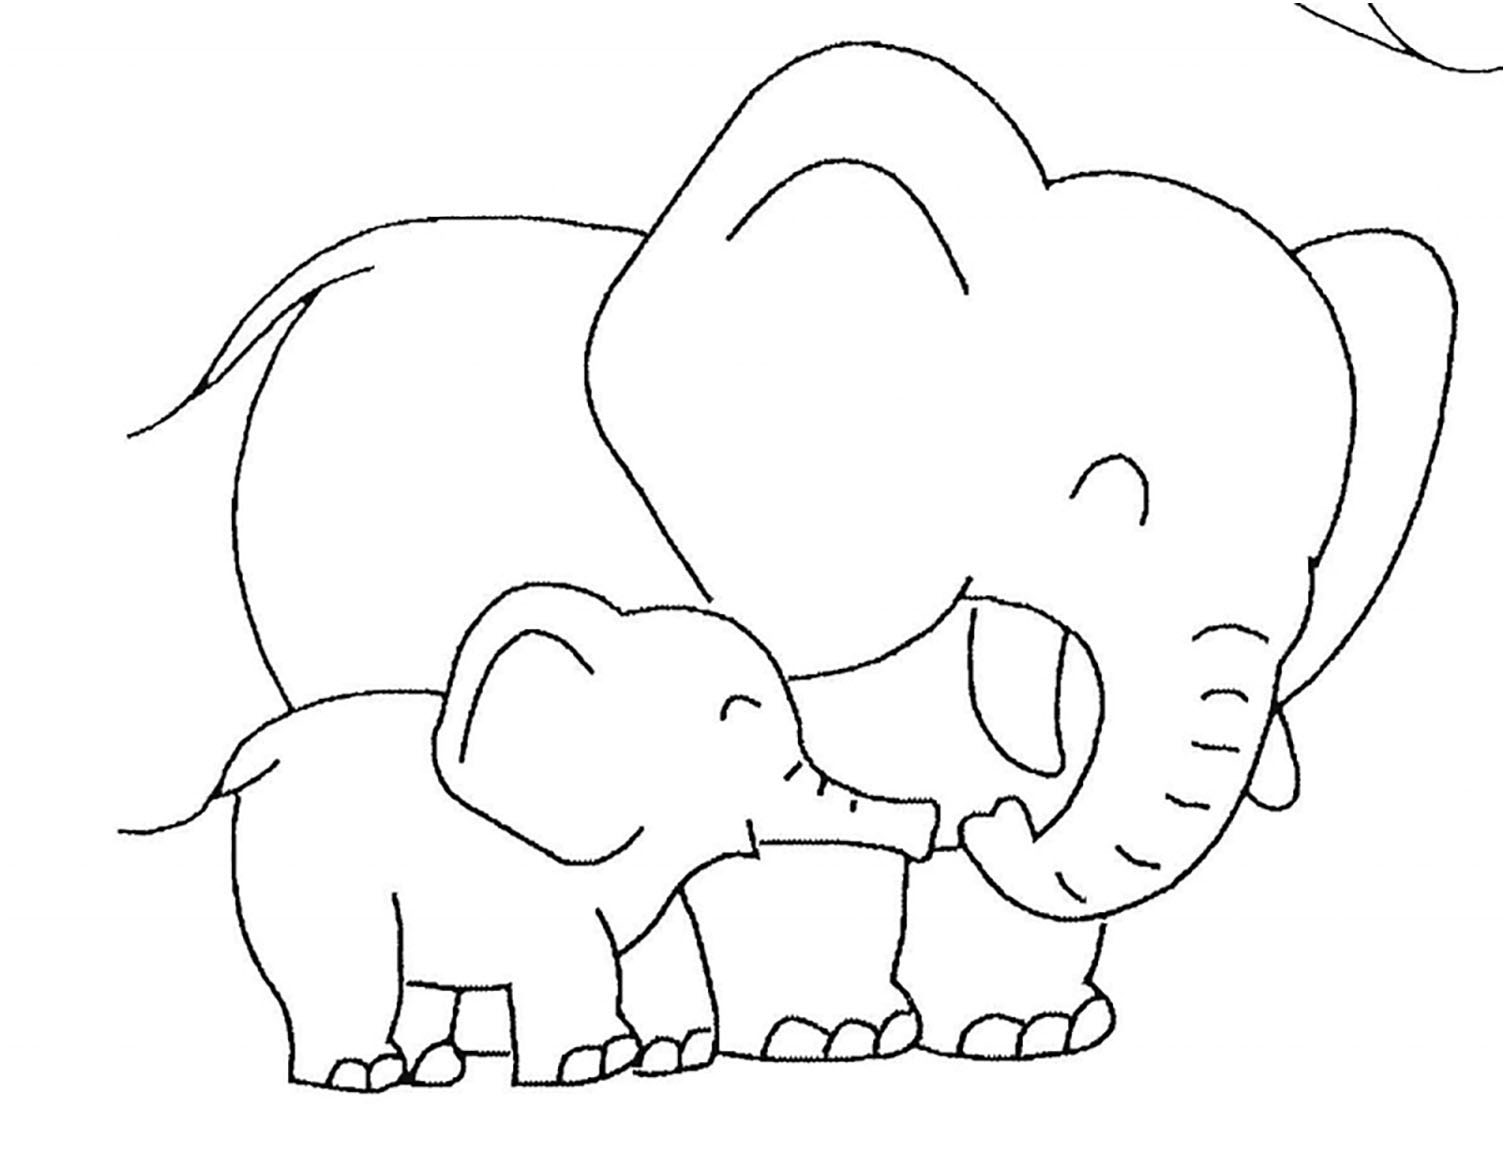 Dessin d'éléphant à colorier, facile pour enfants